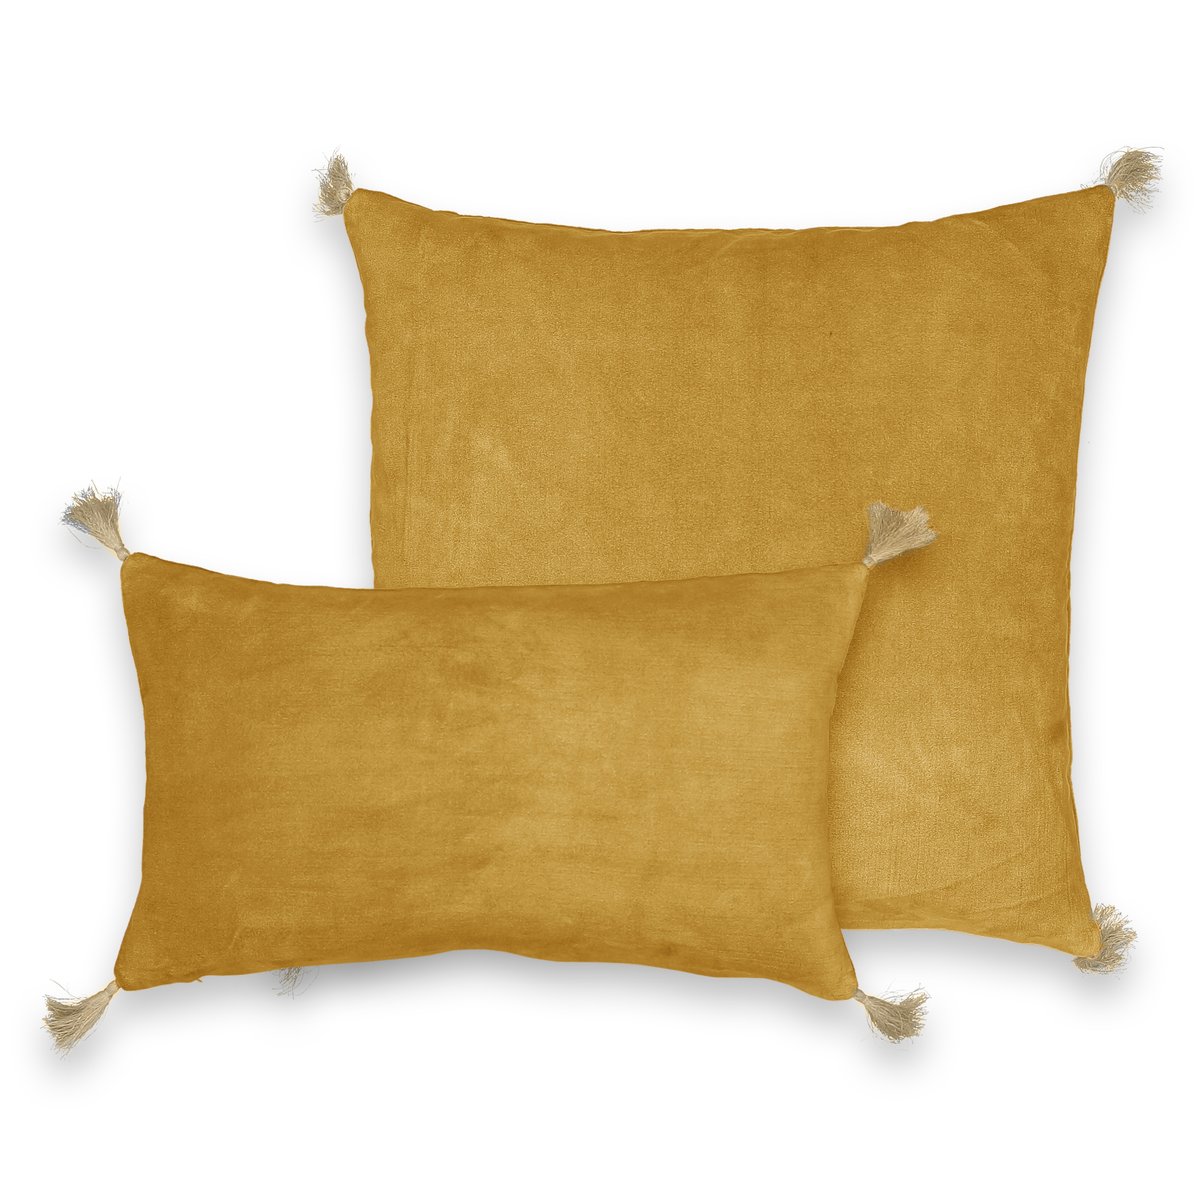 Чехол LaRedoute На подушку велюровый Cacolet 50 x 30 см желтый, размер 50 x 30 см - фото 3